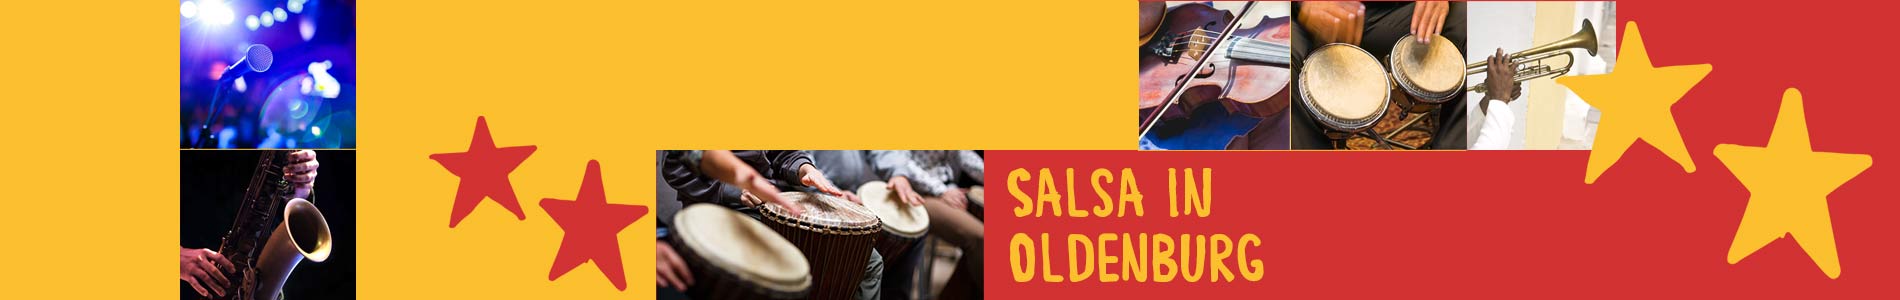 Salsa in Oldenburg – Salsa lernen und tanzen, Tanzkurse, Partys, Veranstaltungen